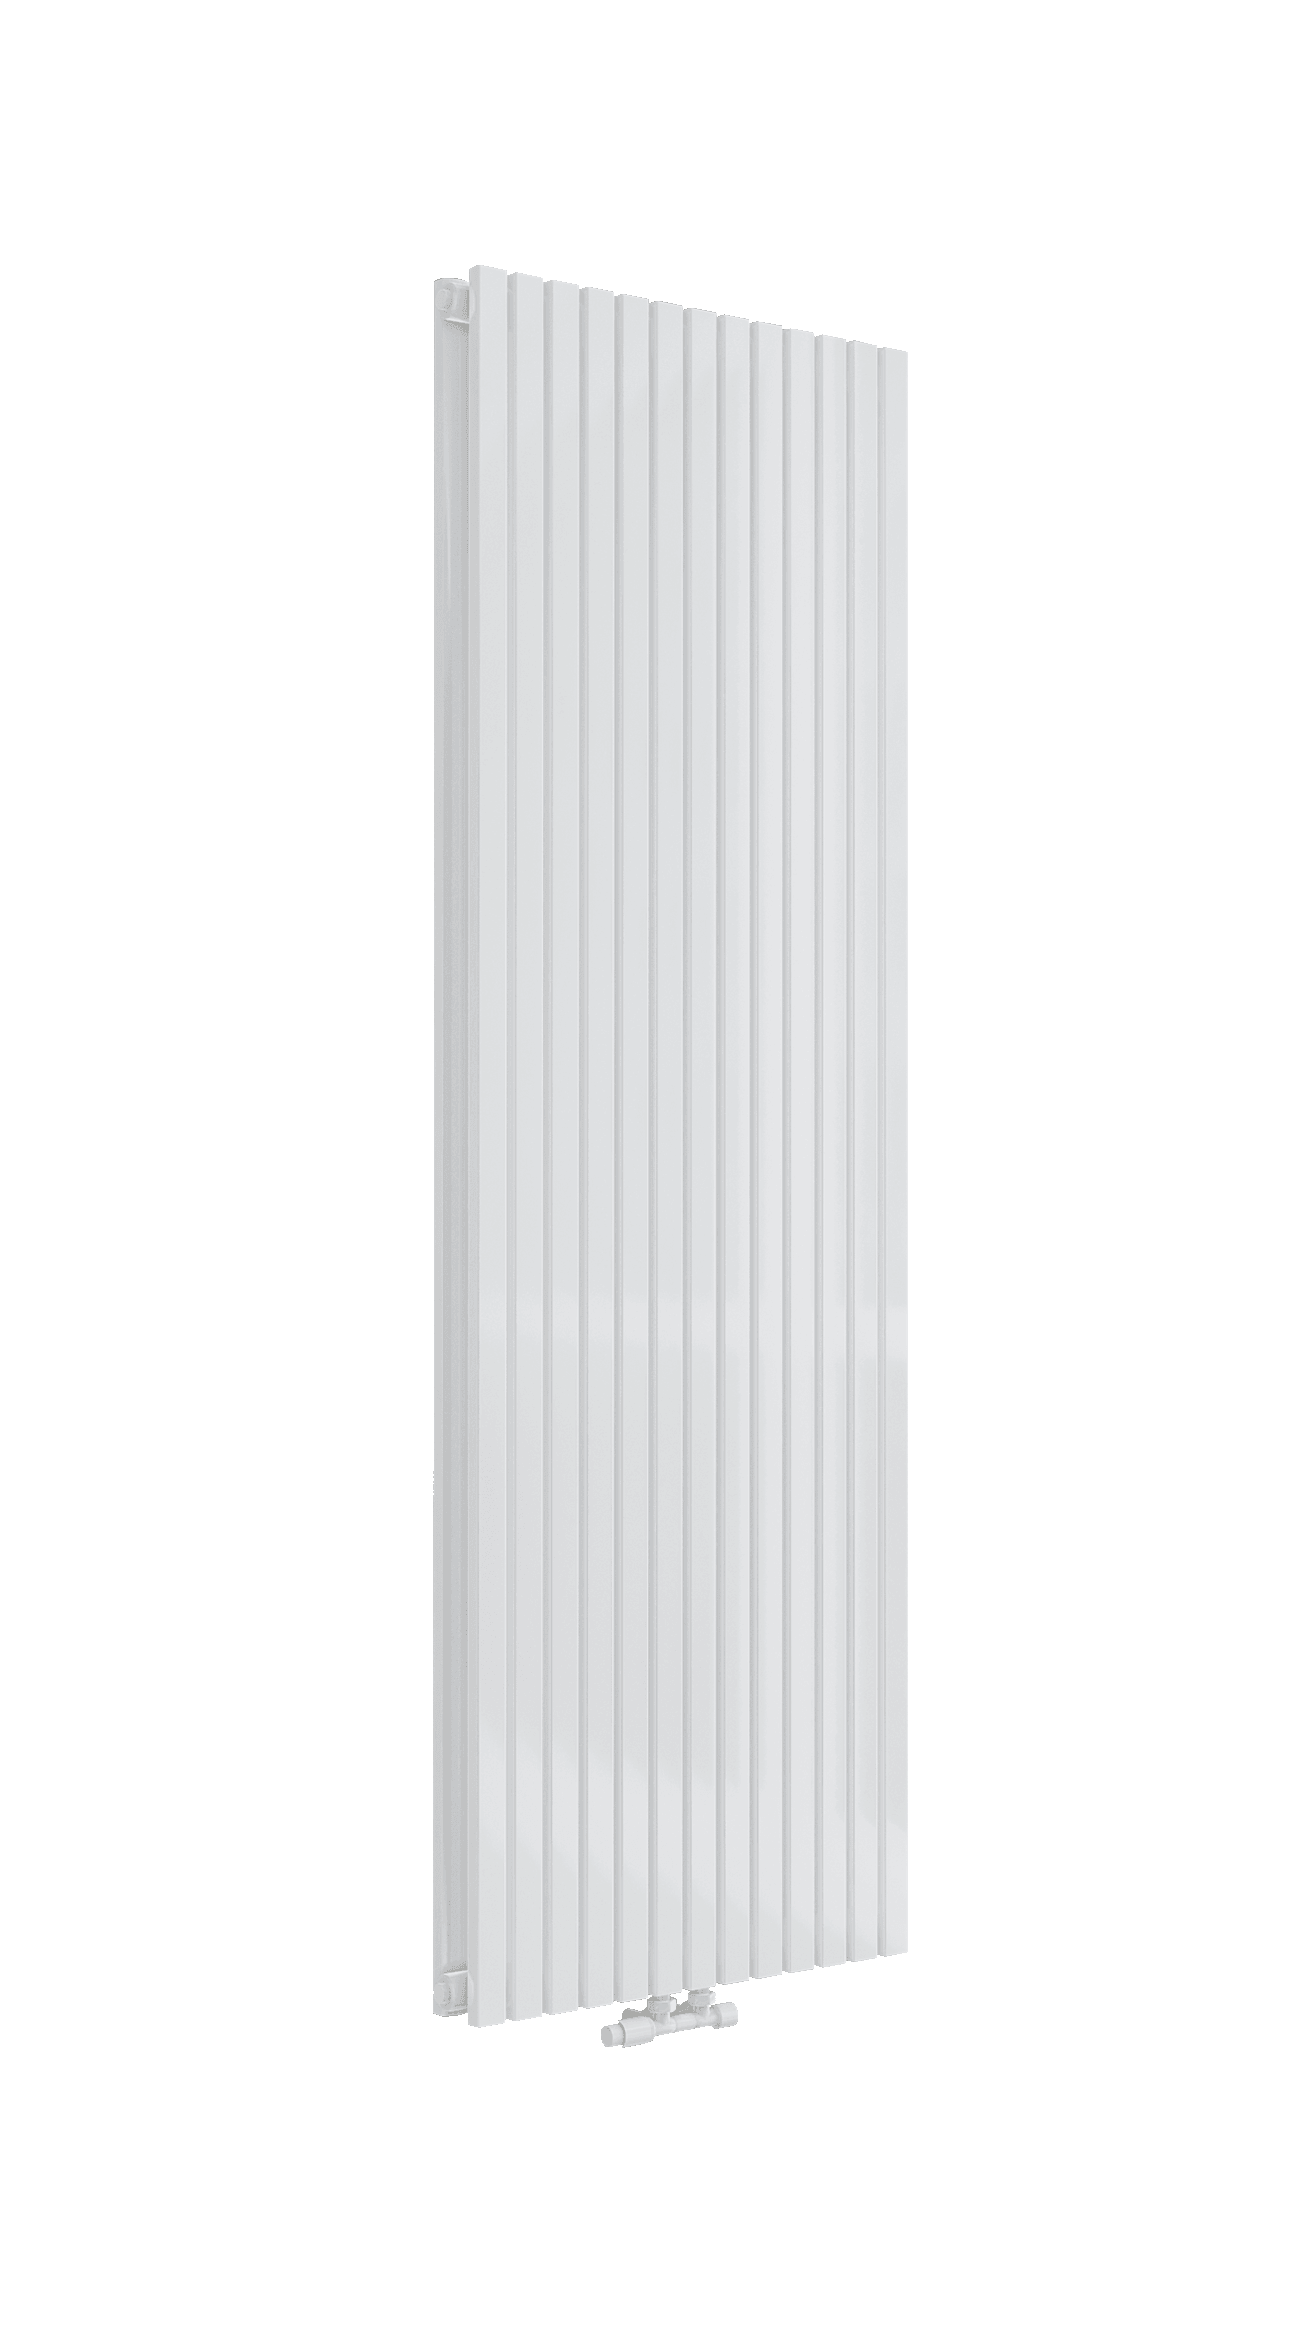 MIMOSA Design Paneelheizkörper Vertikal 2-Lagig Vertikal Weiss 2639/3445 WATT - Badheizkoerper